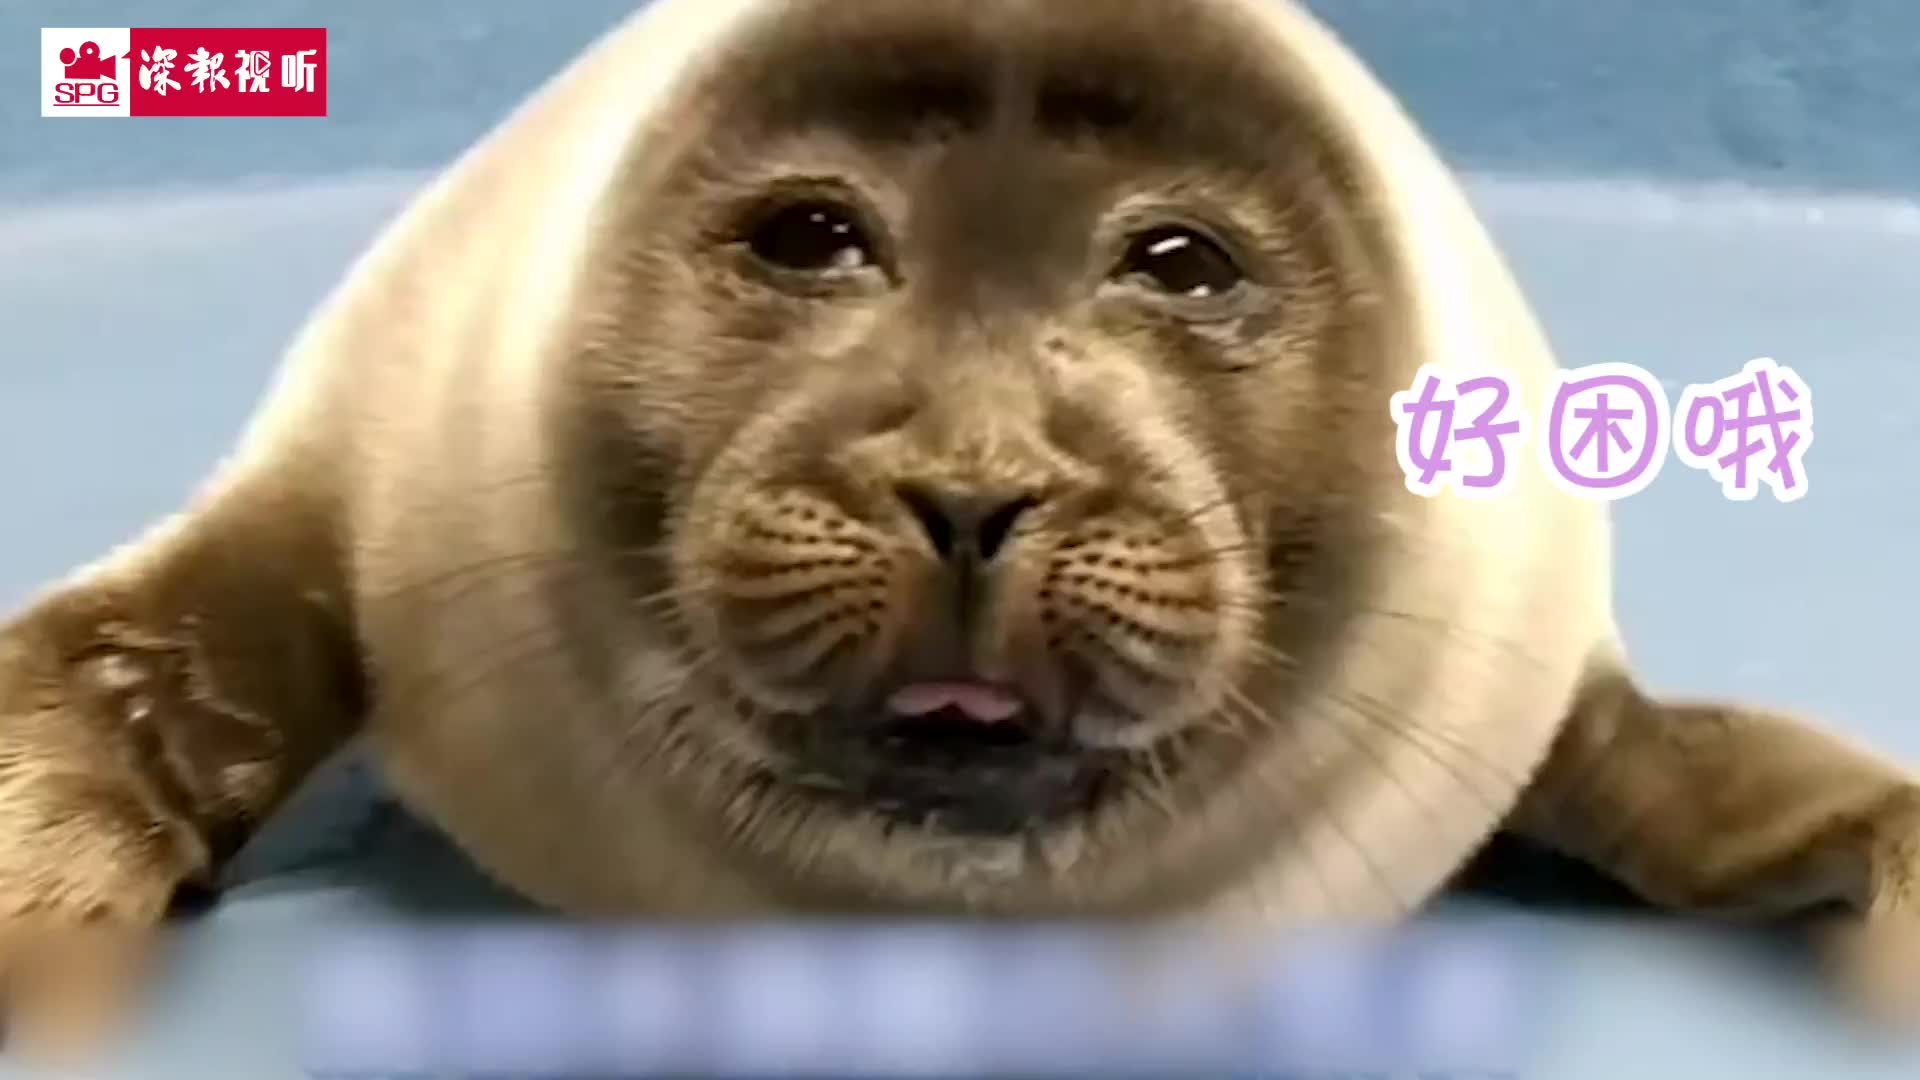 日本水族馆小海豹酷似大叔脸走红 一起来吸萌萌哒海豹